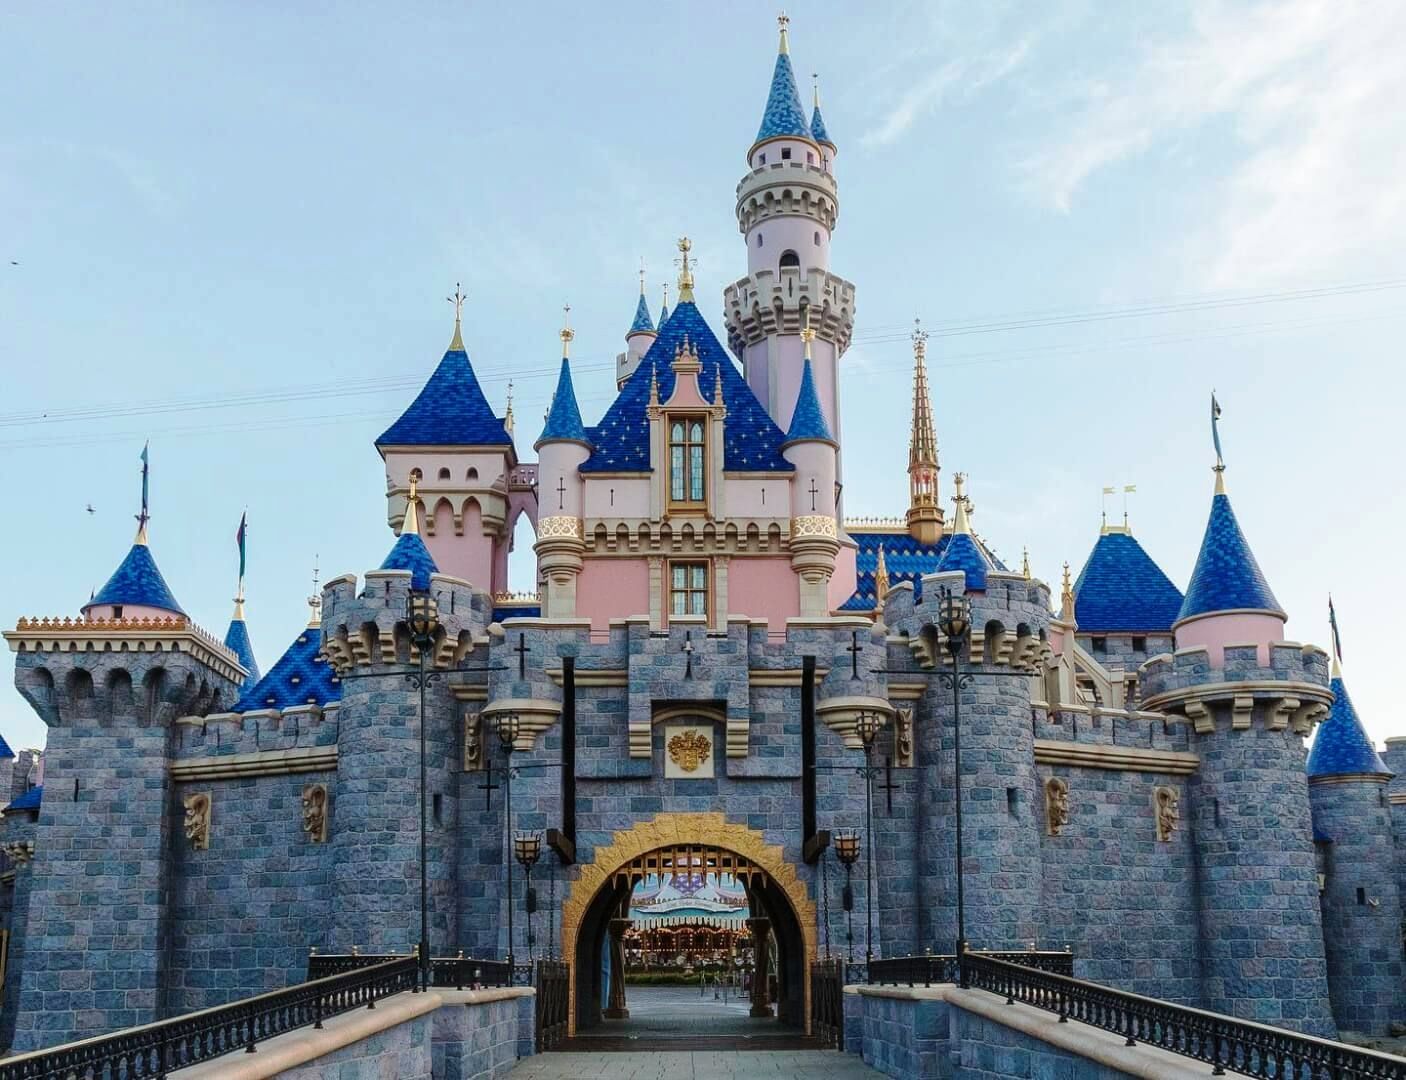 Sleeping Beauty Castle | Disney Wiki | FANDOM powered by Wikia